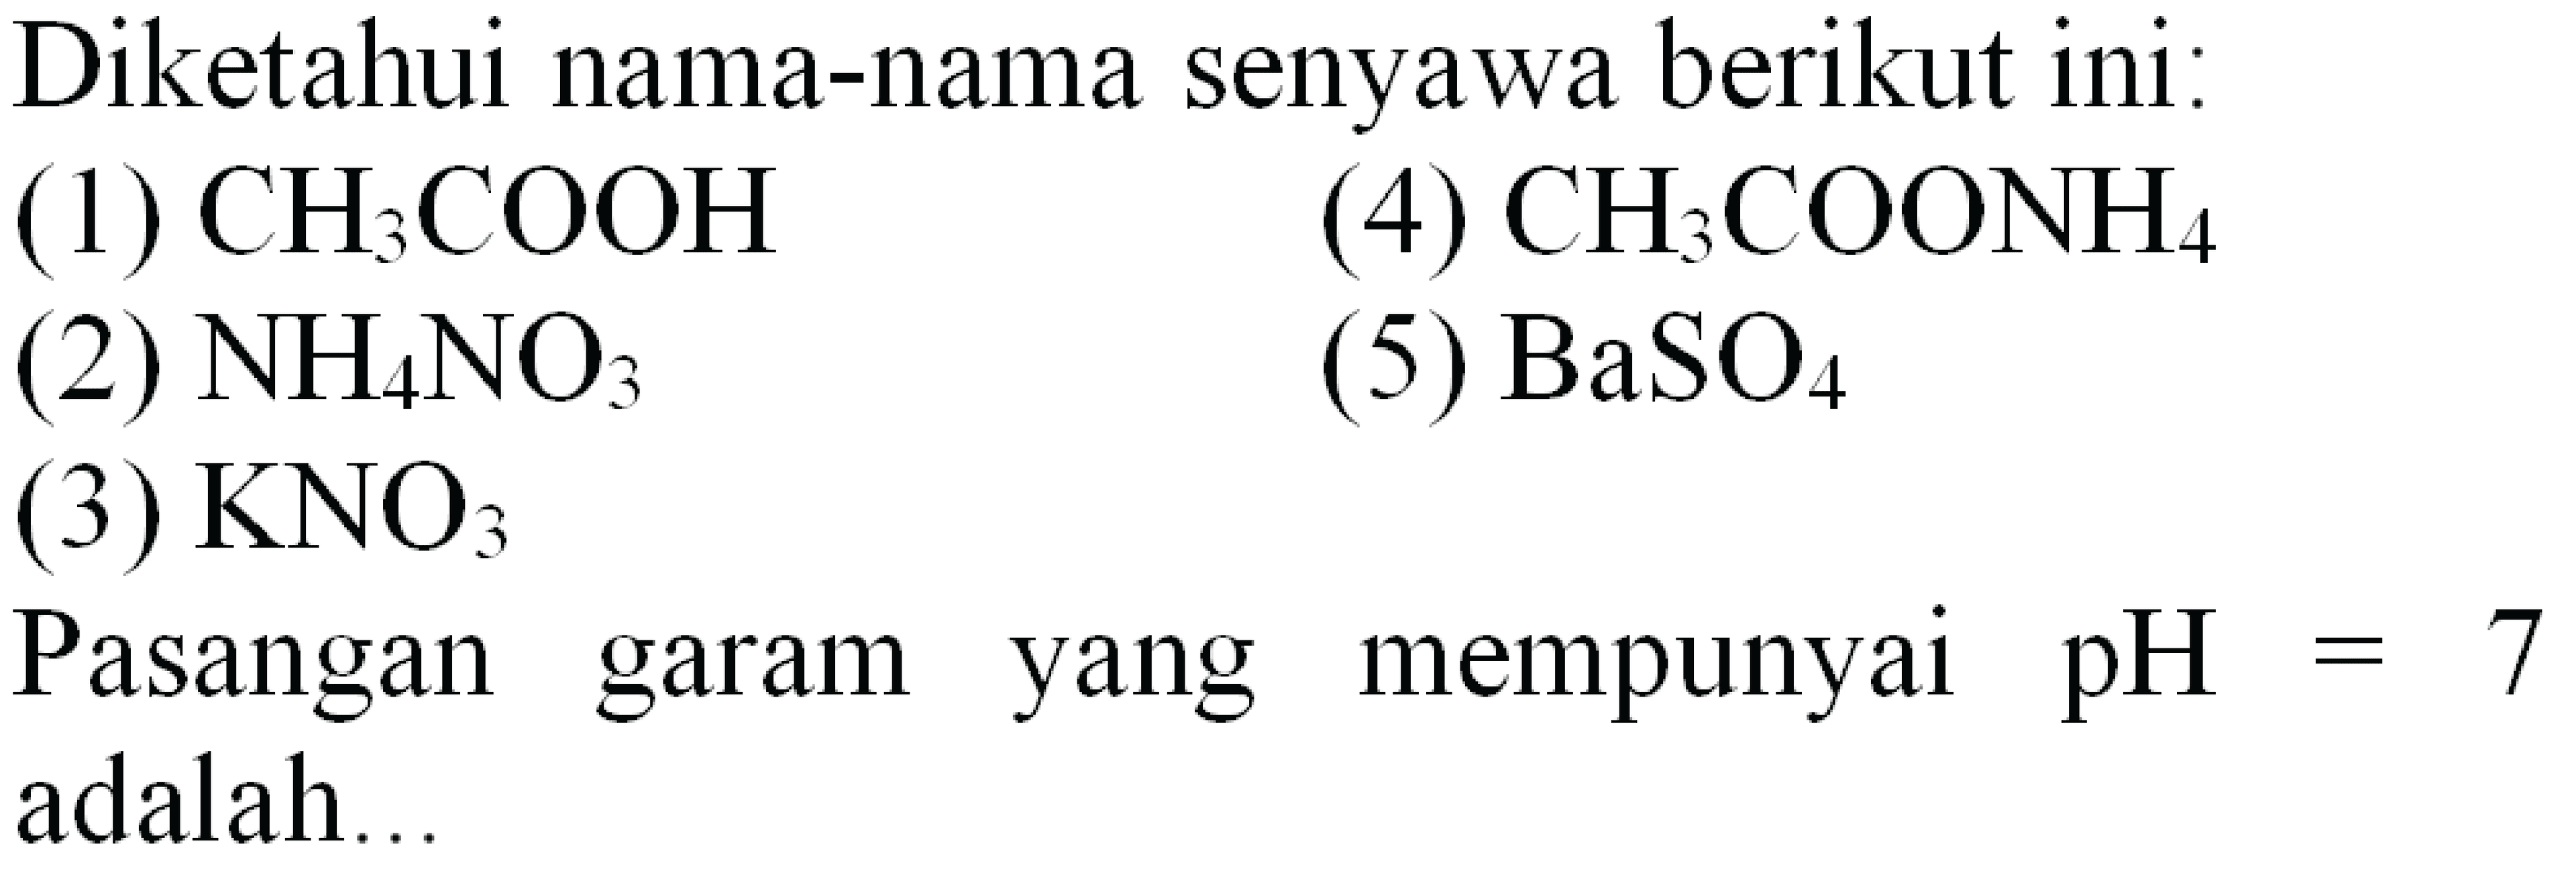 Diketahui nama-nama senyawa berikut ini:
(1)  CH3 COOH 
(4)  CH3 COONH4 
(2)  NH4 NO3 
(5)  BaSO4 
(3)  KNO3 
Pasangan garam yang mempunyai  pH=7  adalah...